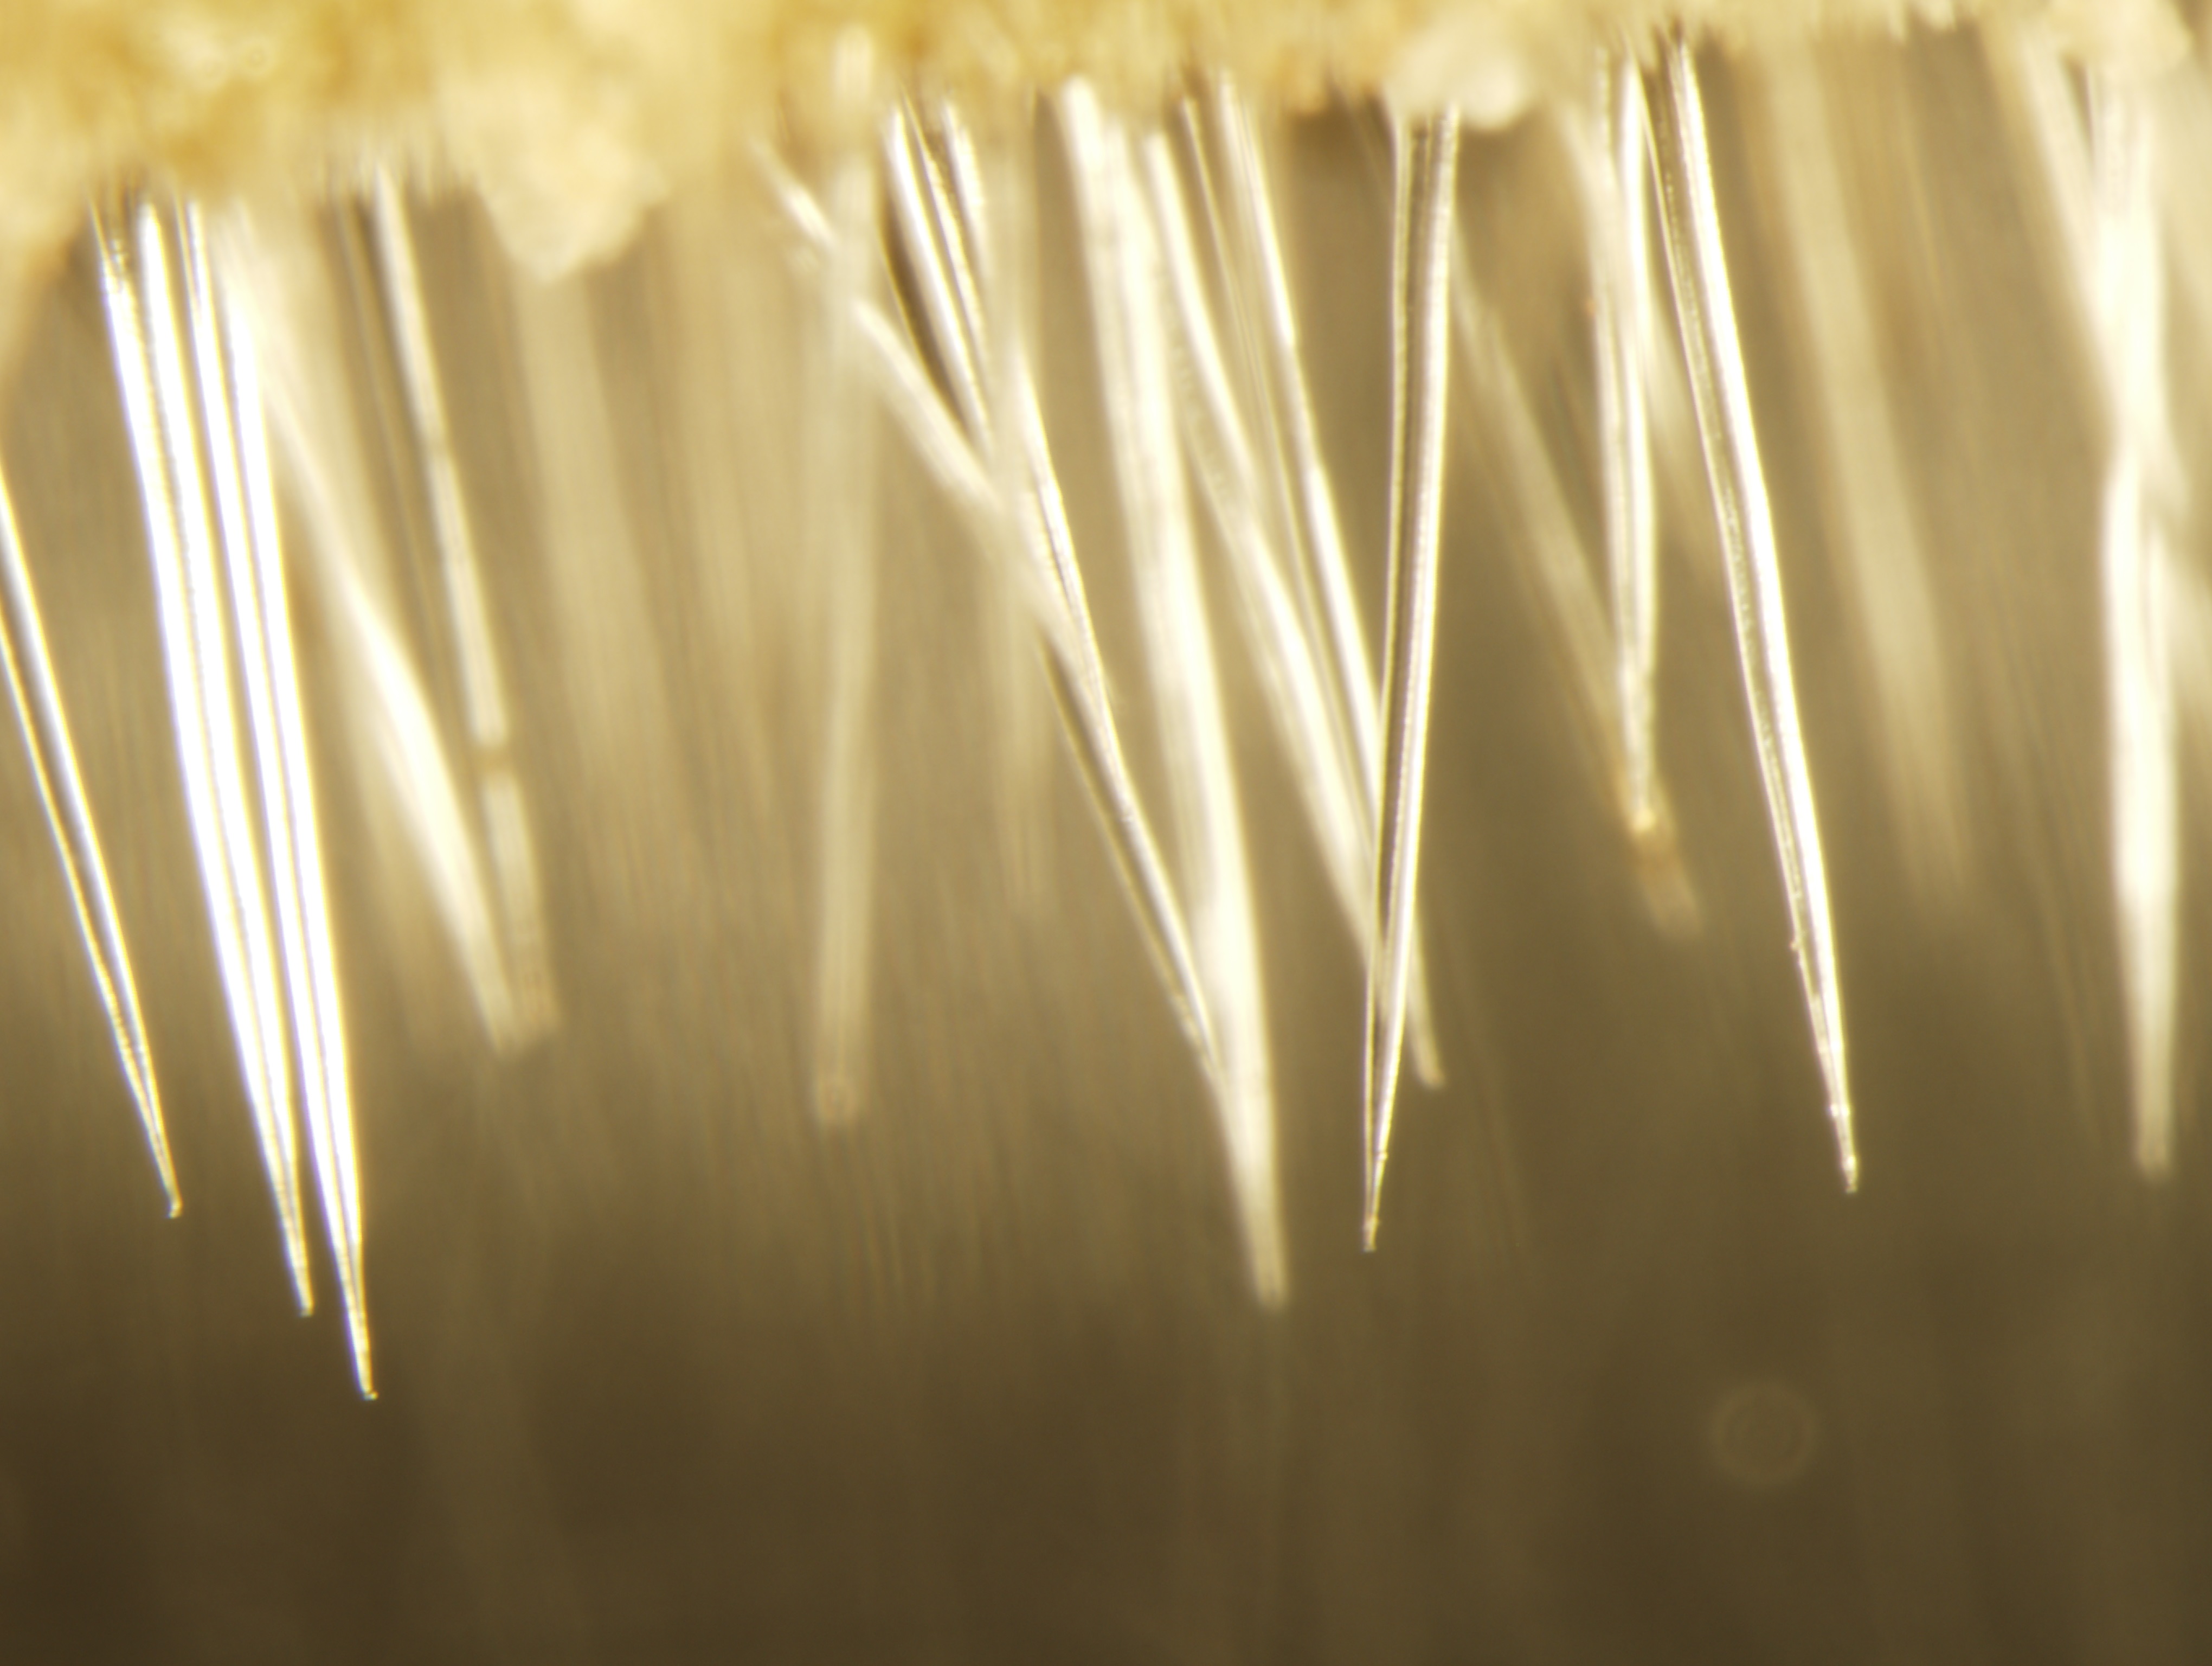 Needle-like hairs of Dendrocnide moroides. 